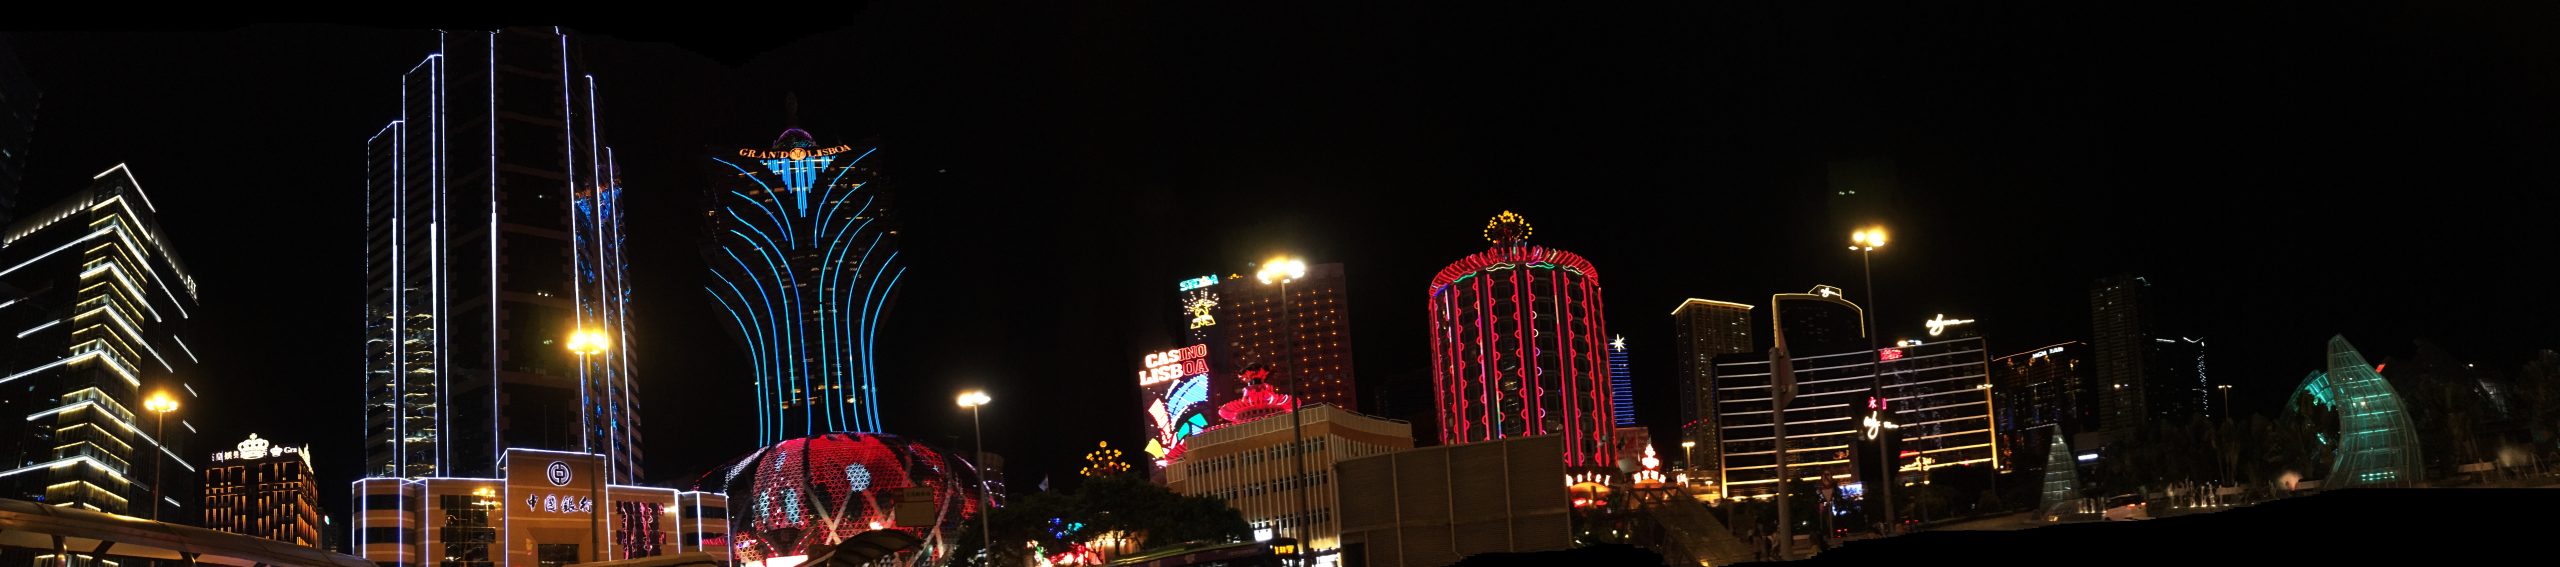 Macau Casinos Panorama scaled